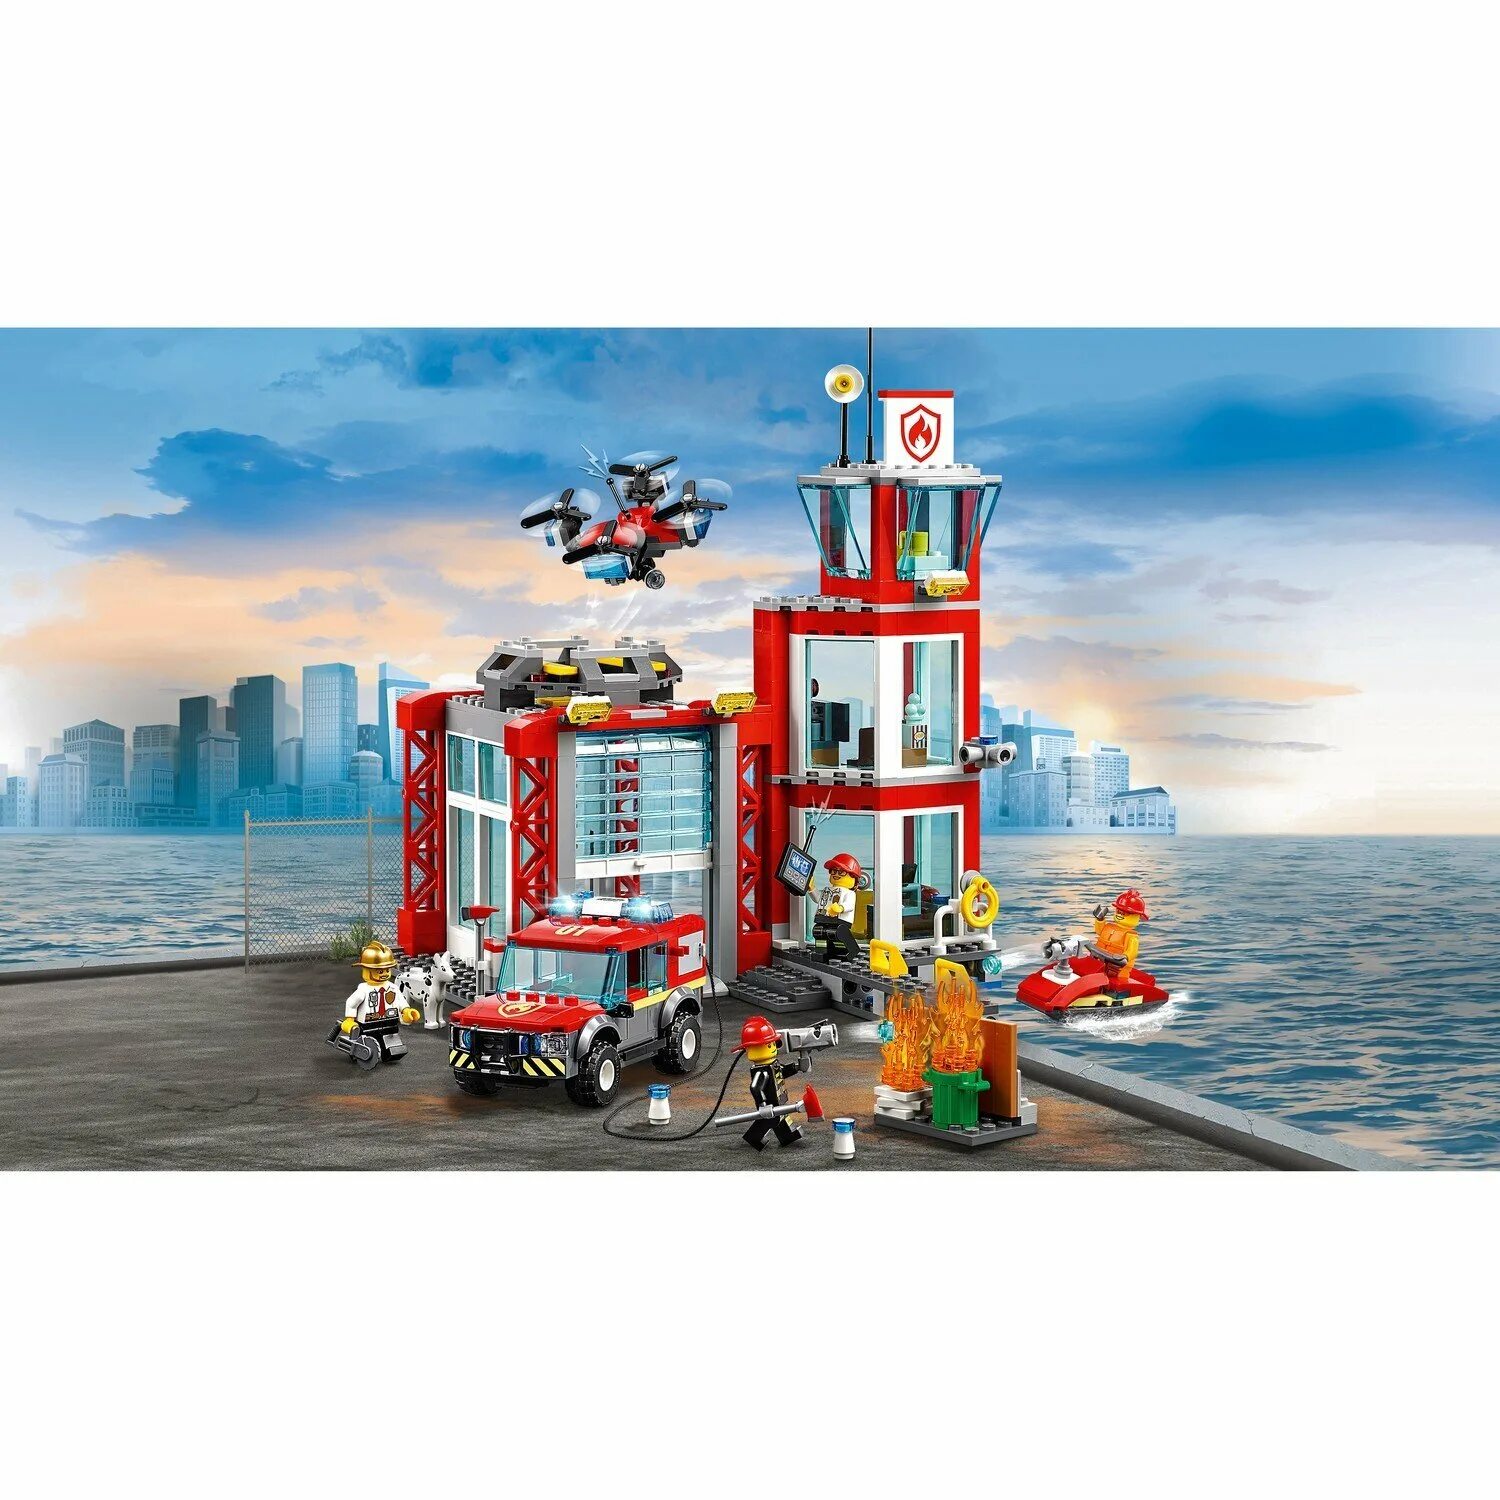 Сити пожарная. LEGO City 60215 пожарное депо. Конструктор LEGO City 60215 пожарное депо. Лего Сити пожарное депо 60215. LEGO City Fire пожарное депо 60215.